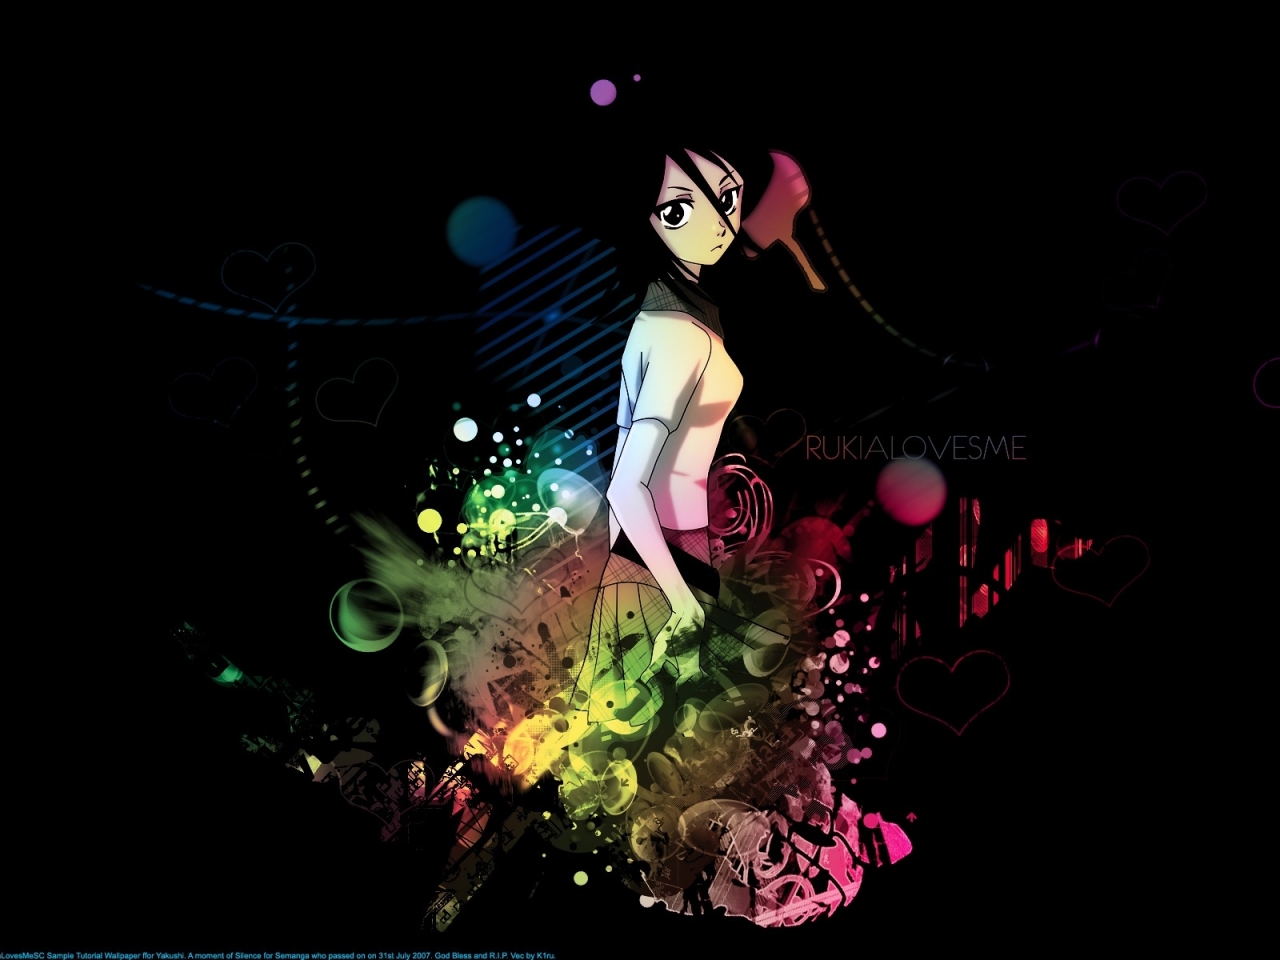 Bleach Rukia for 1280 x 960 resolution